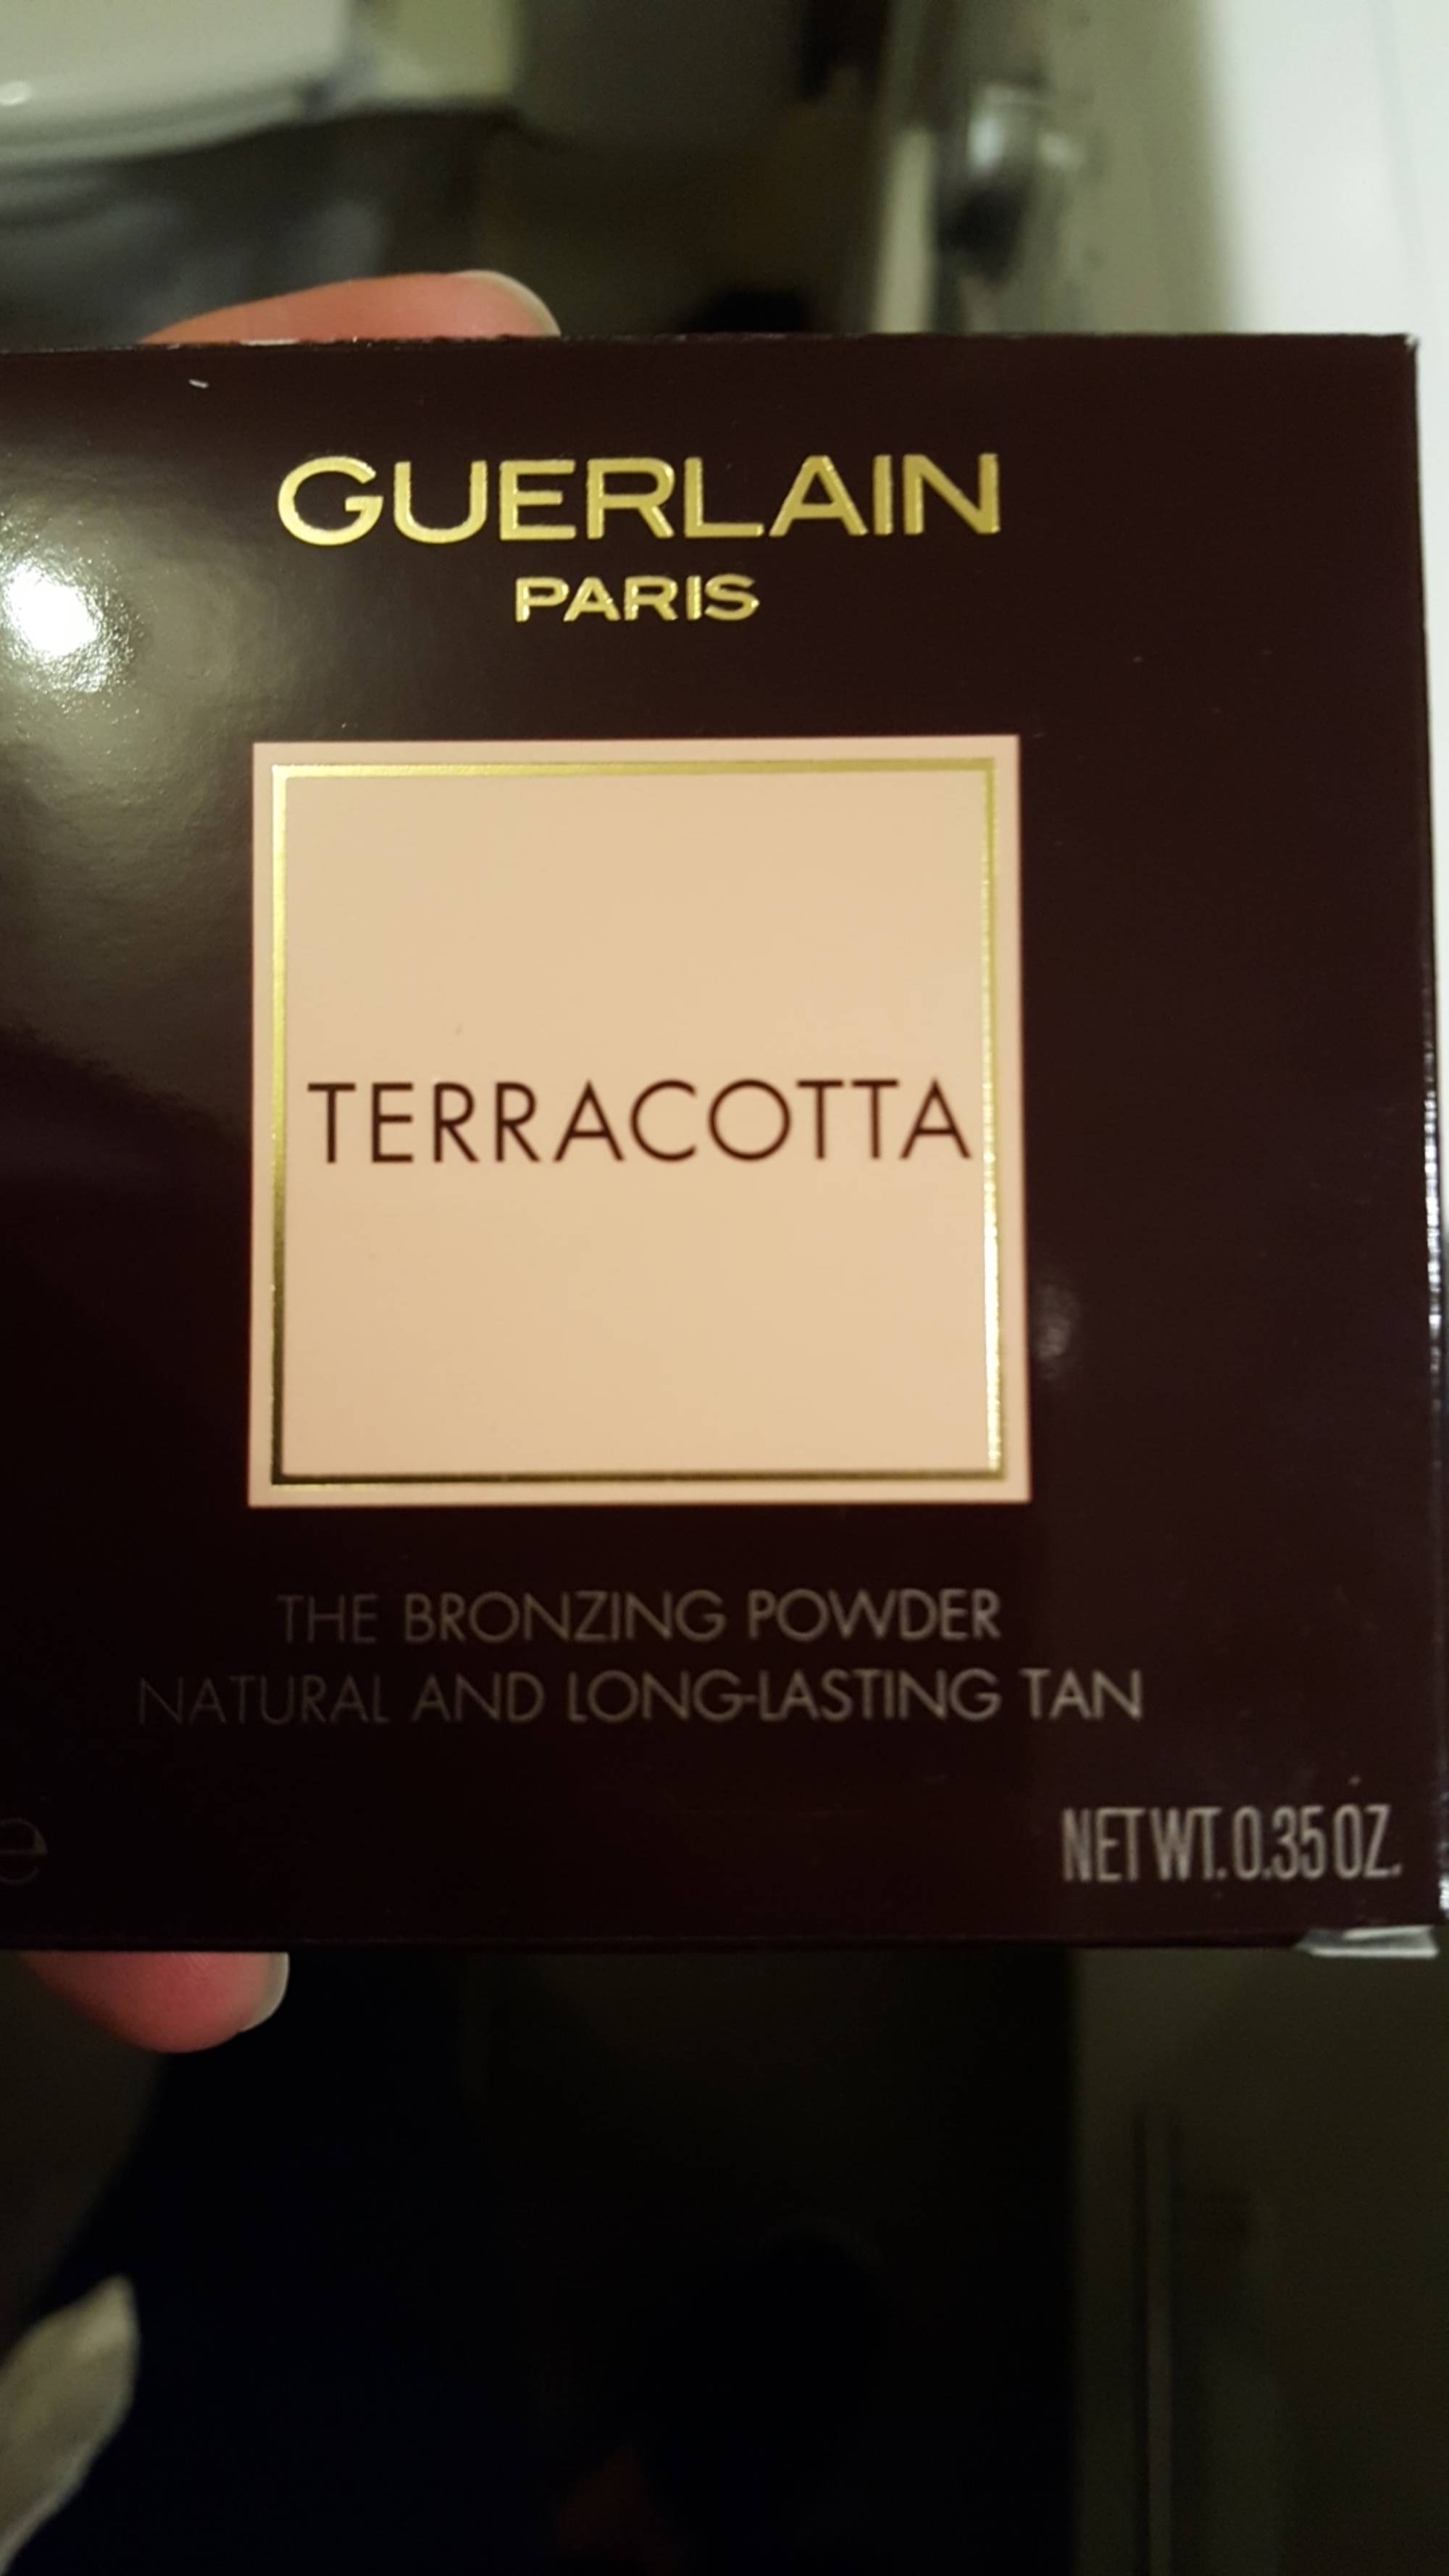 GUERLAIN PARIS - Terracotta - La poudre bronzante hâle naturel et longue tenue